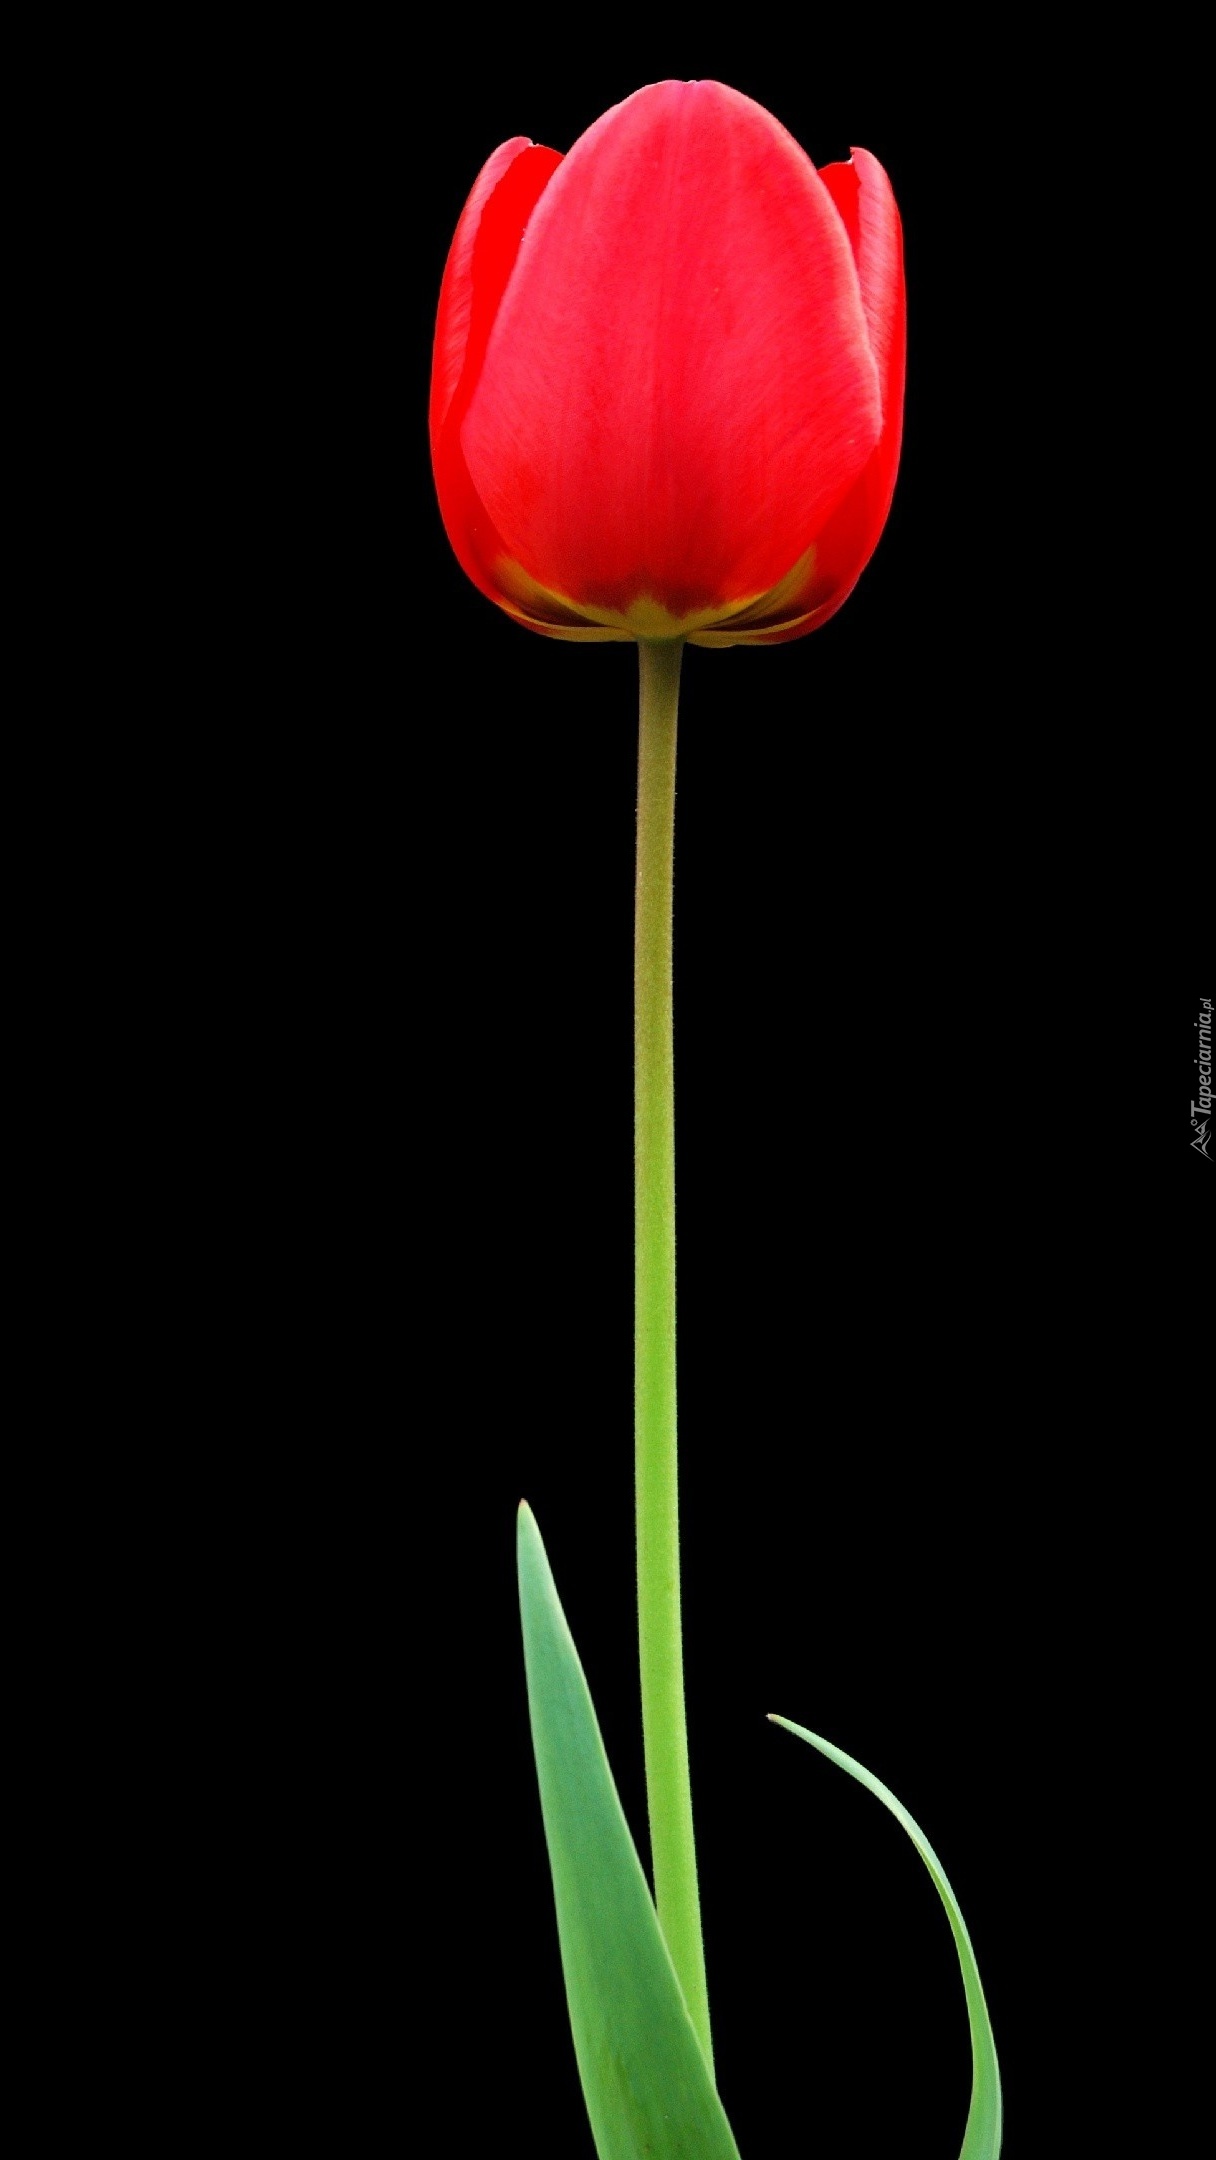 Samotny czerwony tulipan